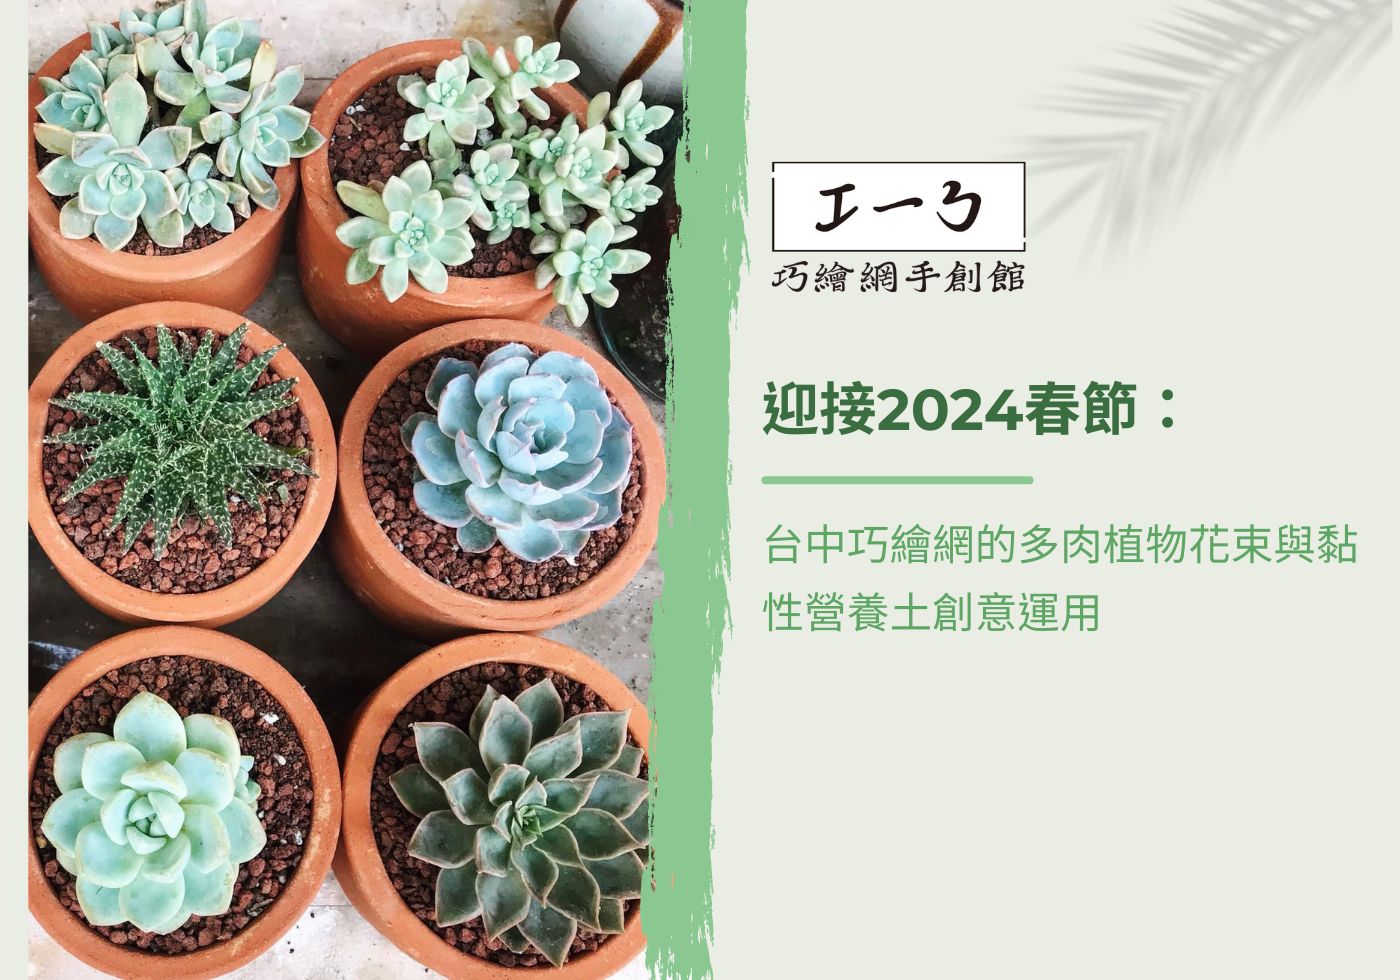 閱讀更多文章 迎接2024春節：台中巧繪網的多肉植物花束與黏性營養土創意運用